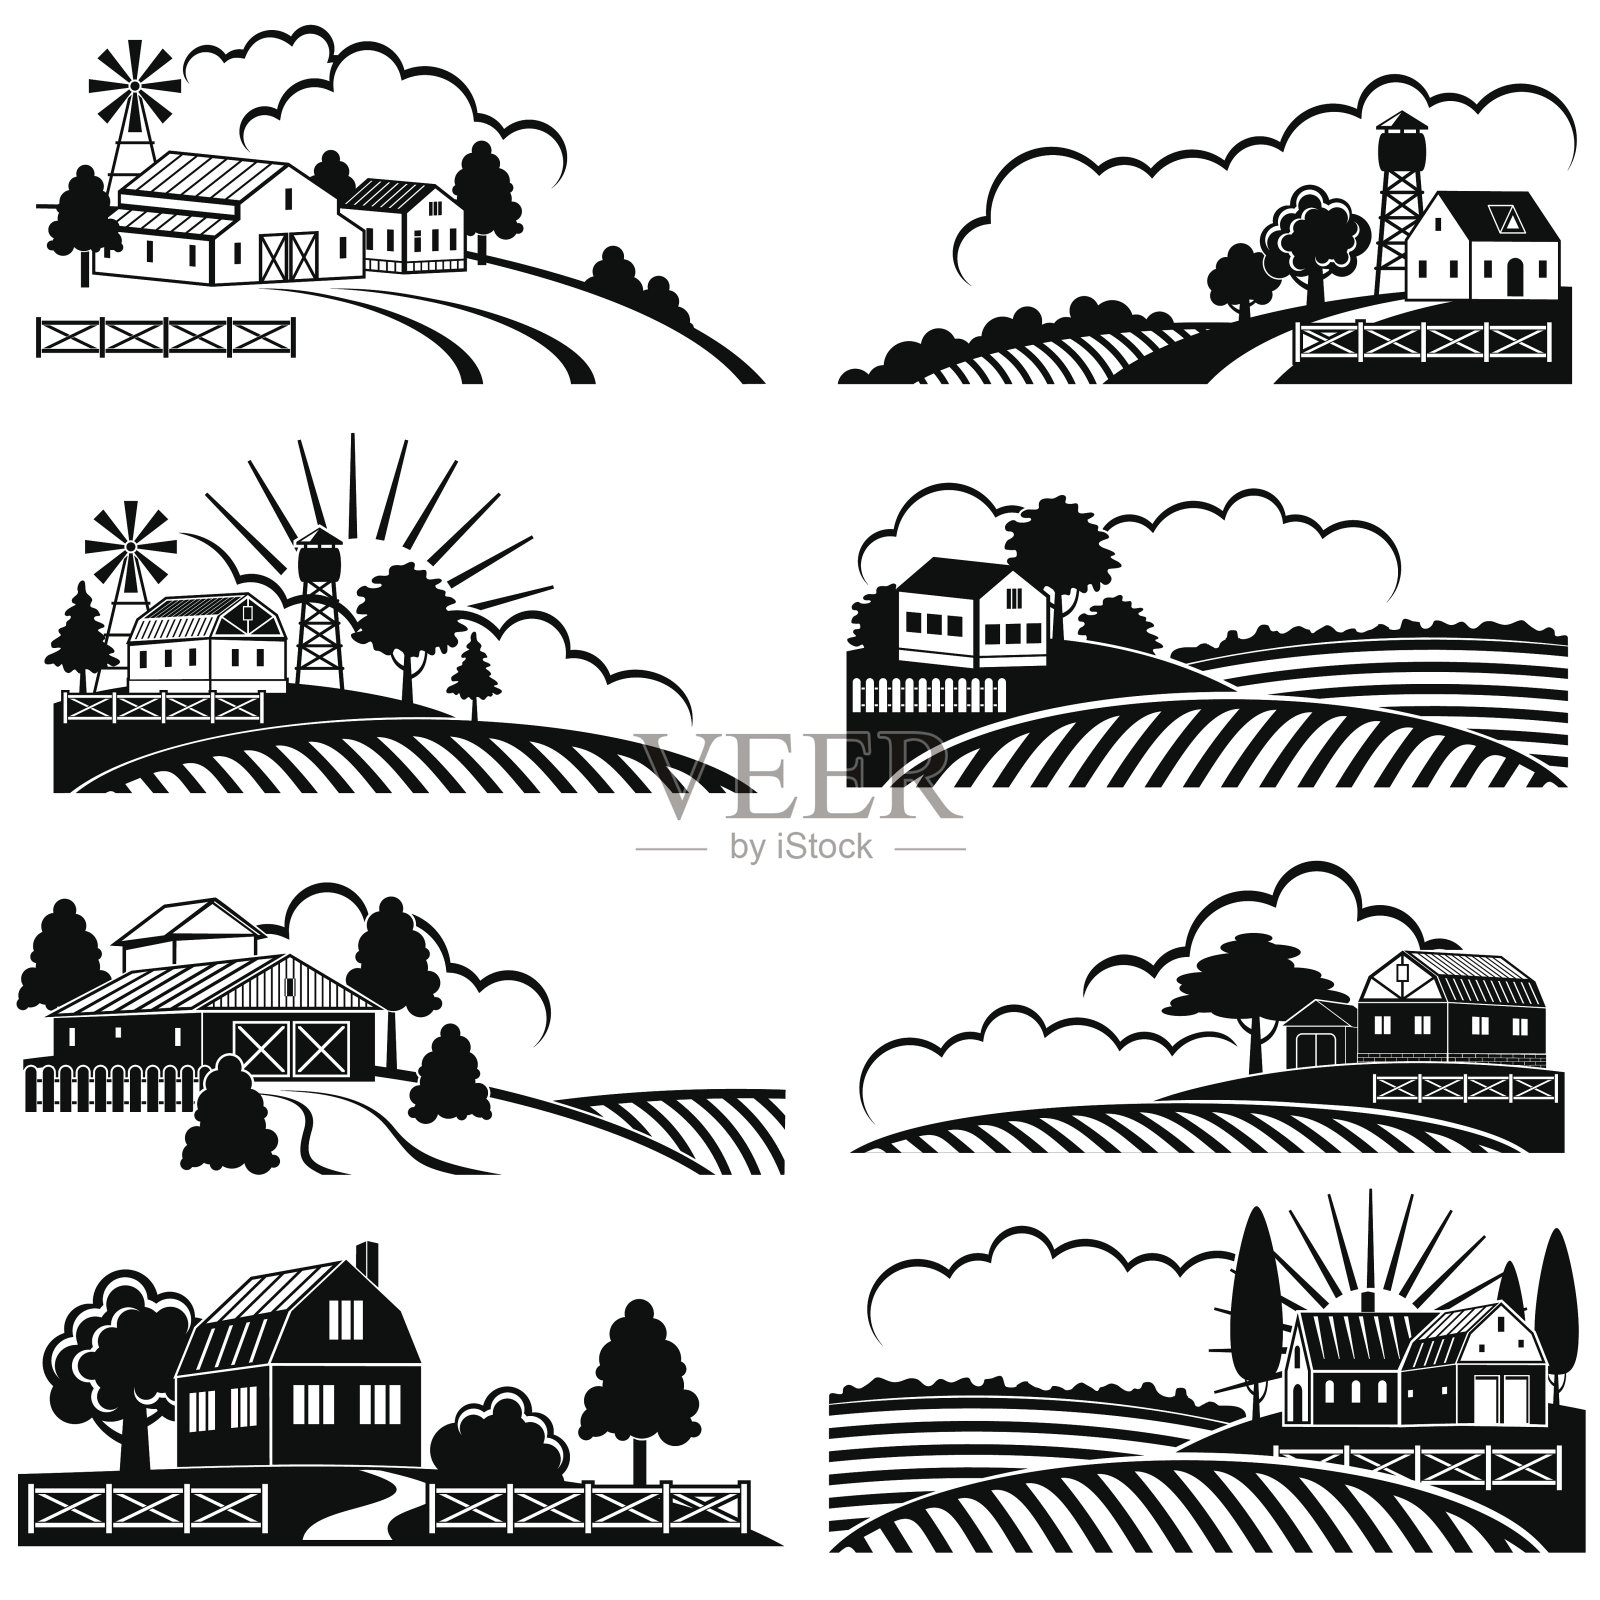 带有农田建筑的复古乡村景观。矢量复古木刻艺术插画图片素材